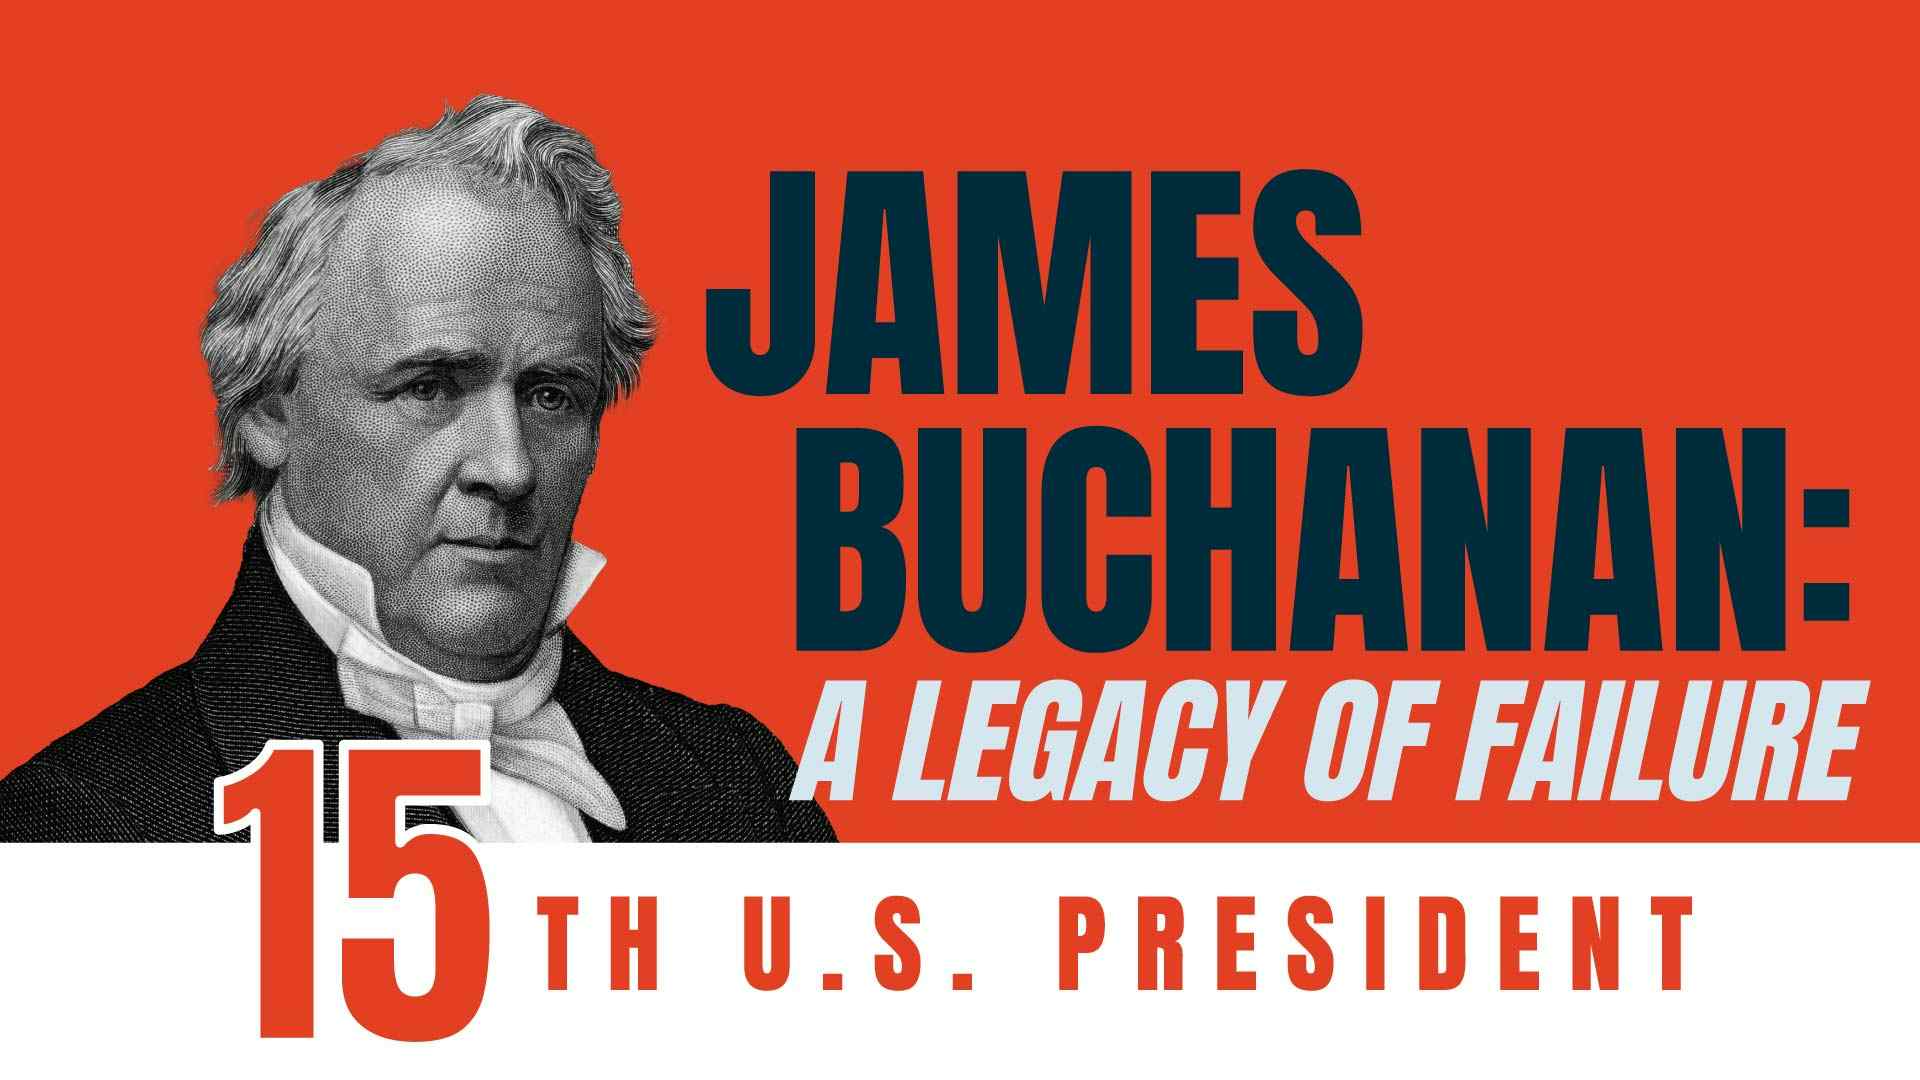 James Buchanan: A Legacy of Failure